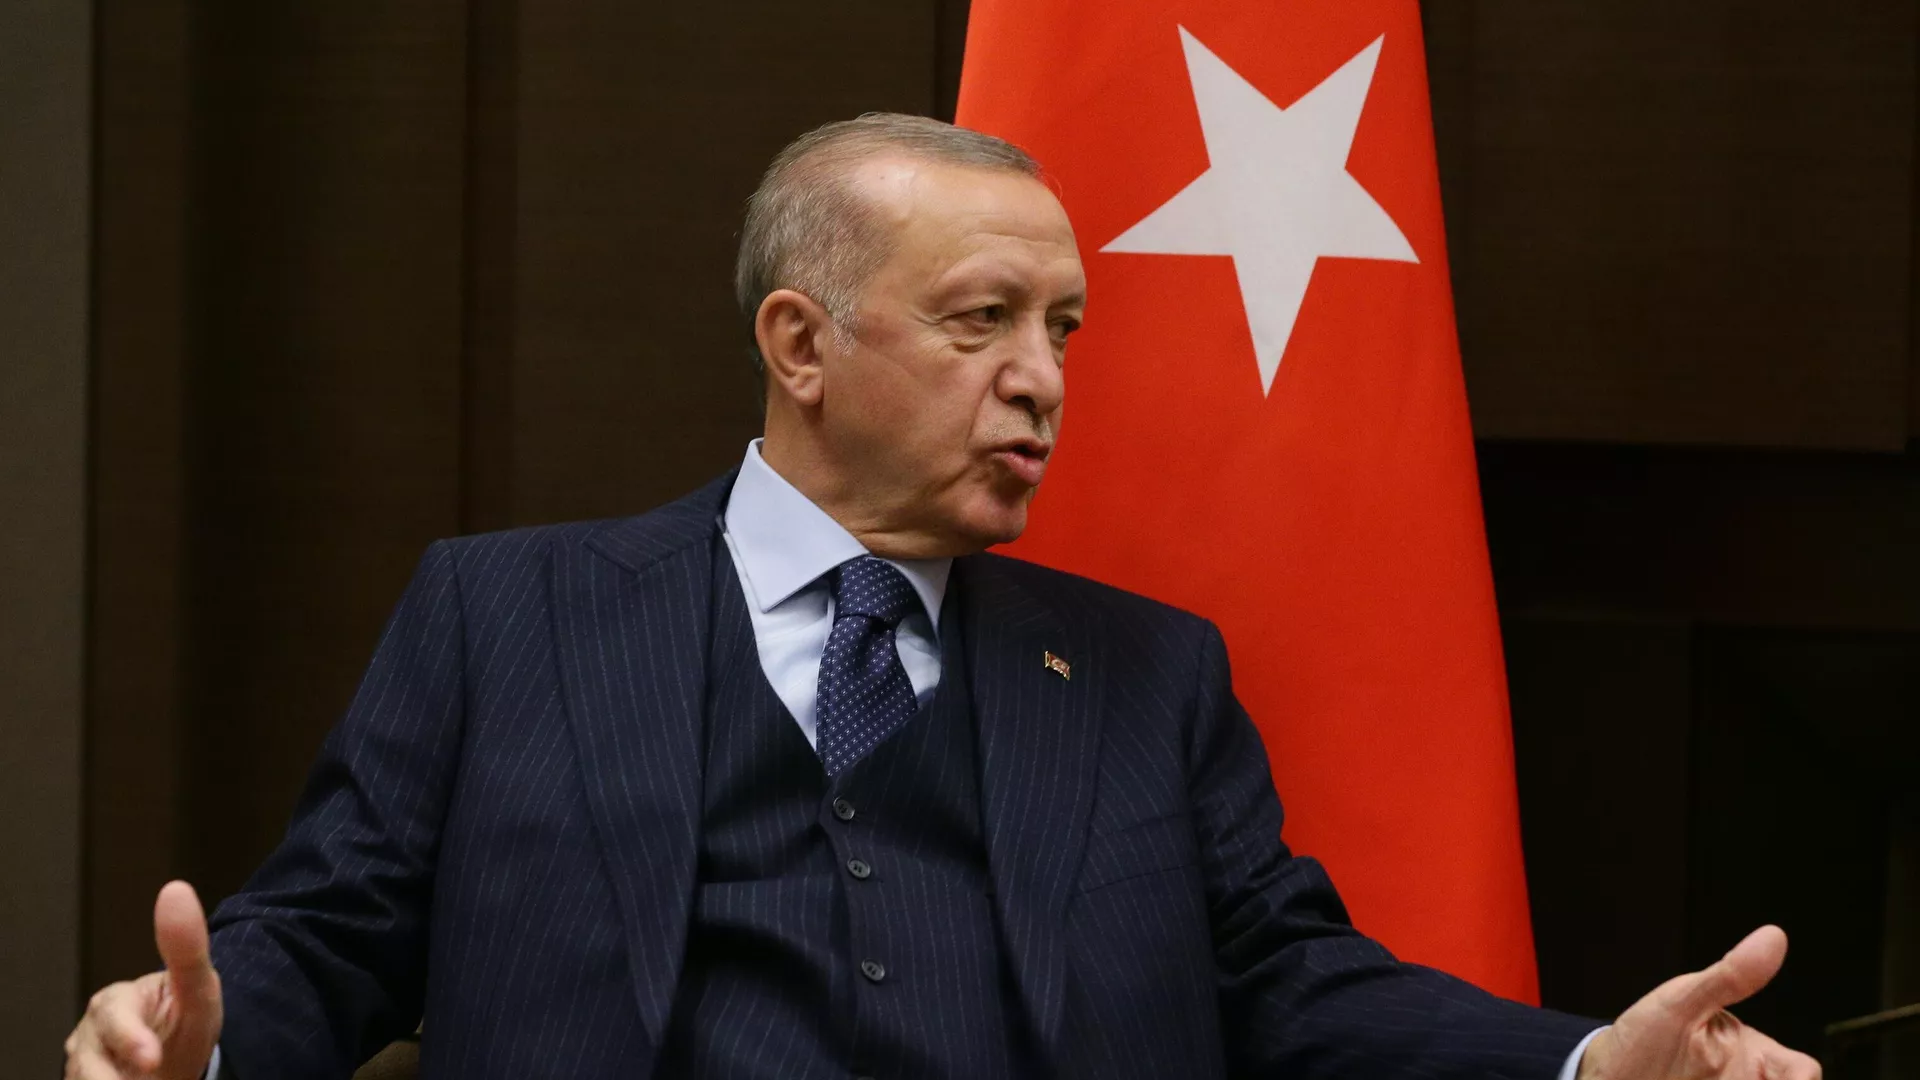 Эрдоган заявил о «беспокойстве некоторых» зерновой сделкой с Путиным